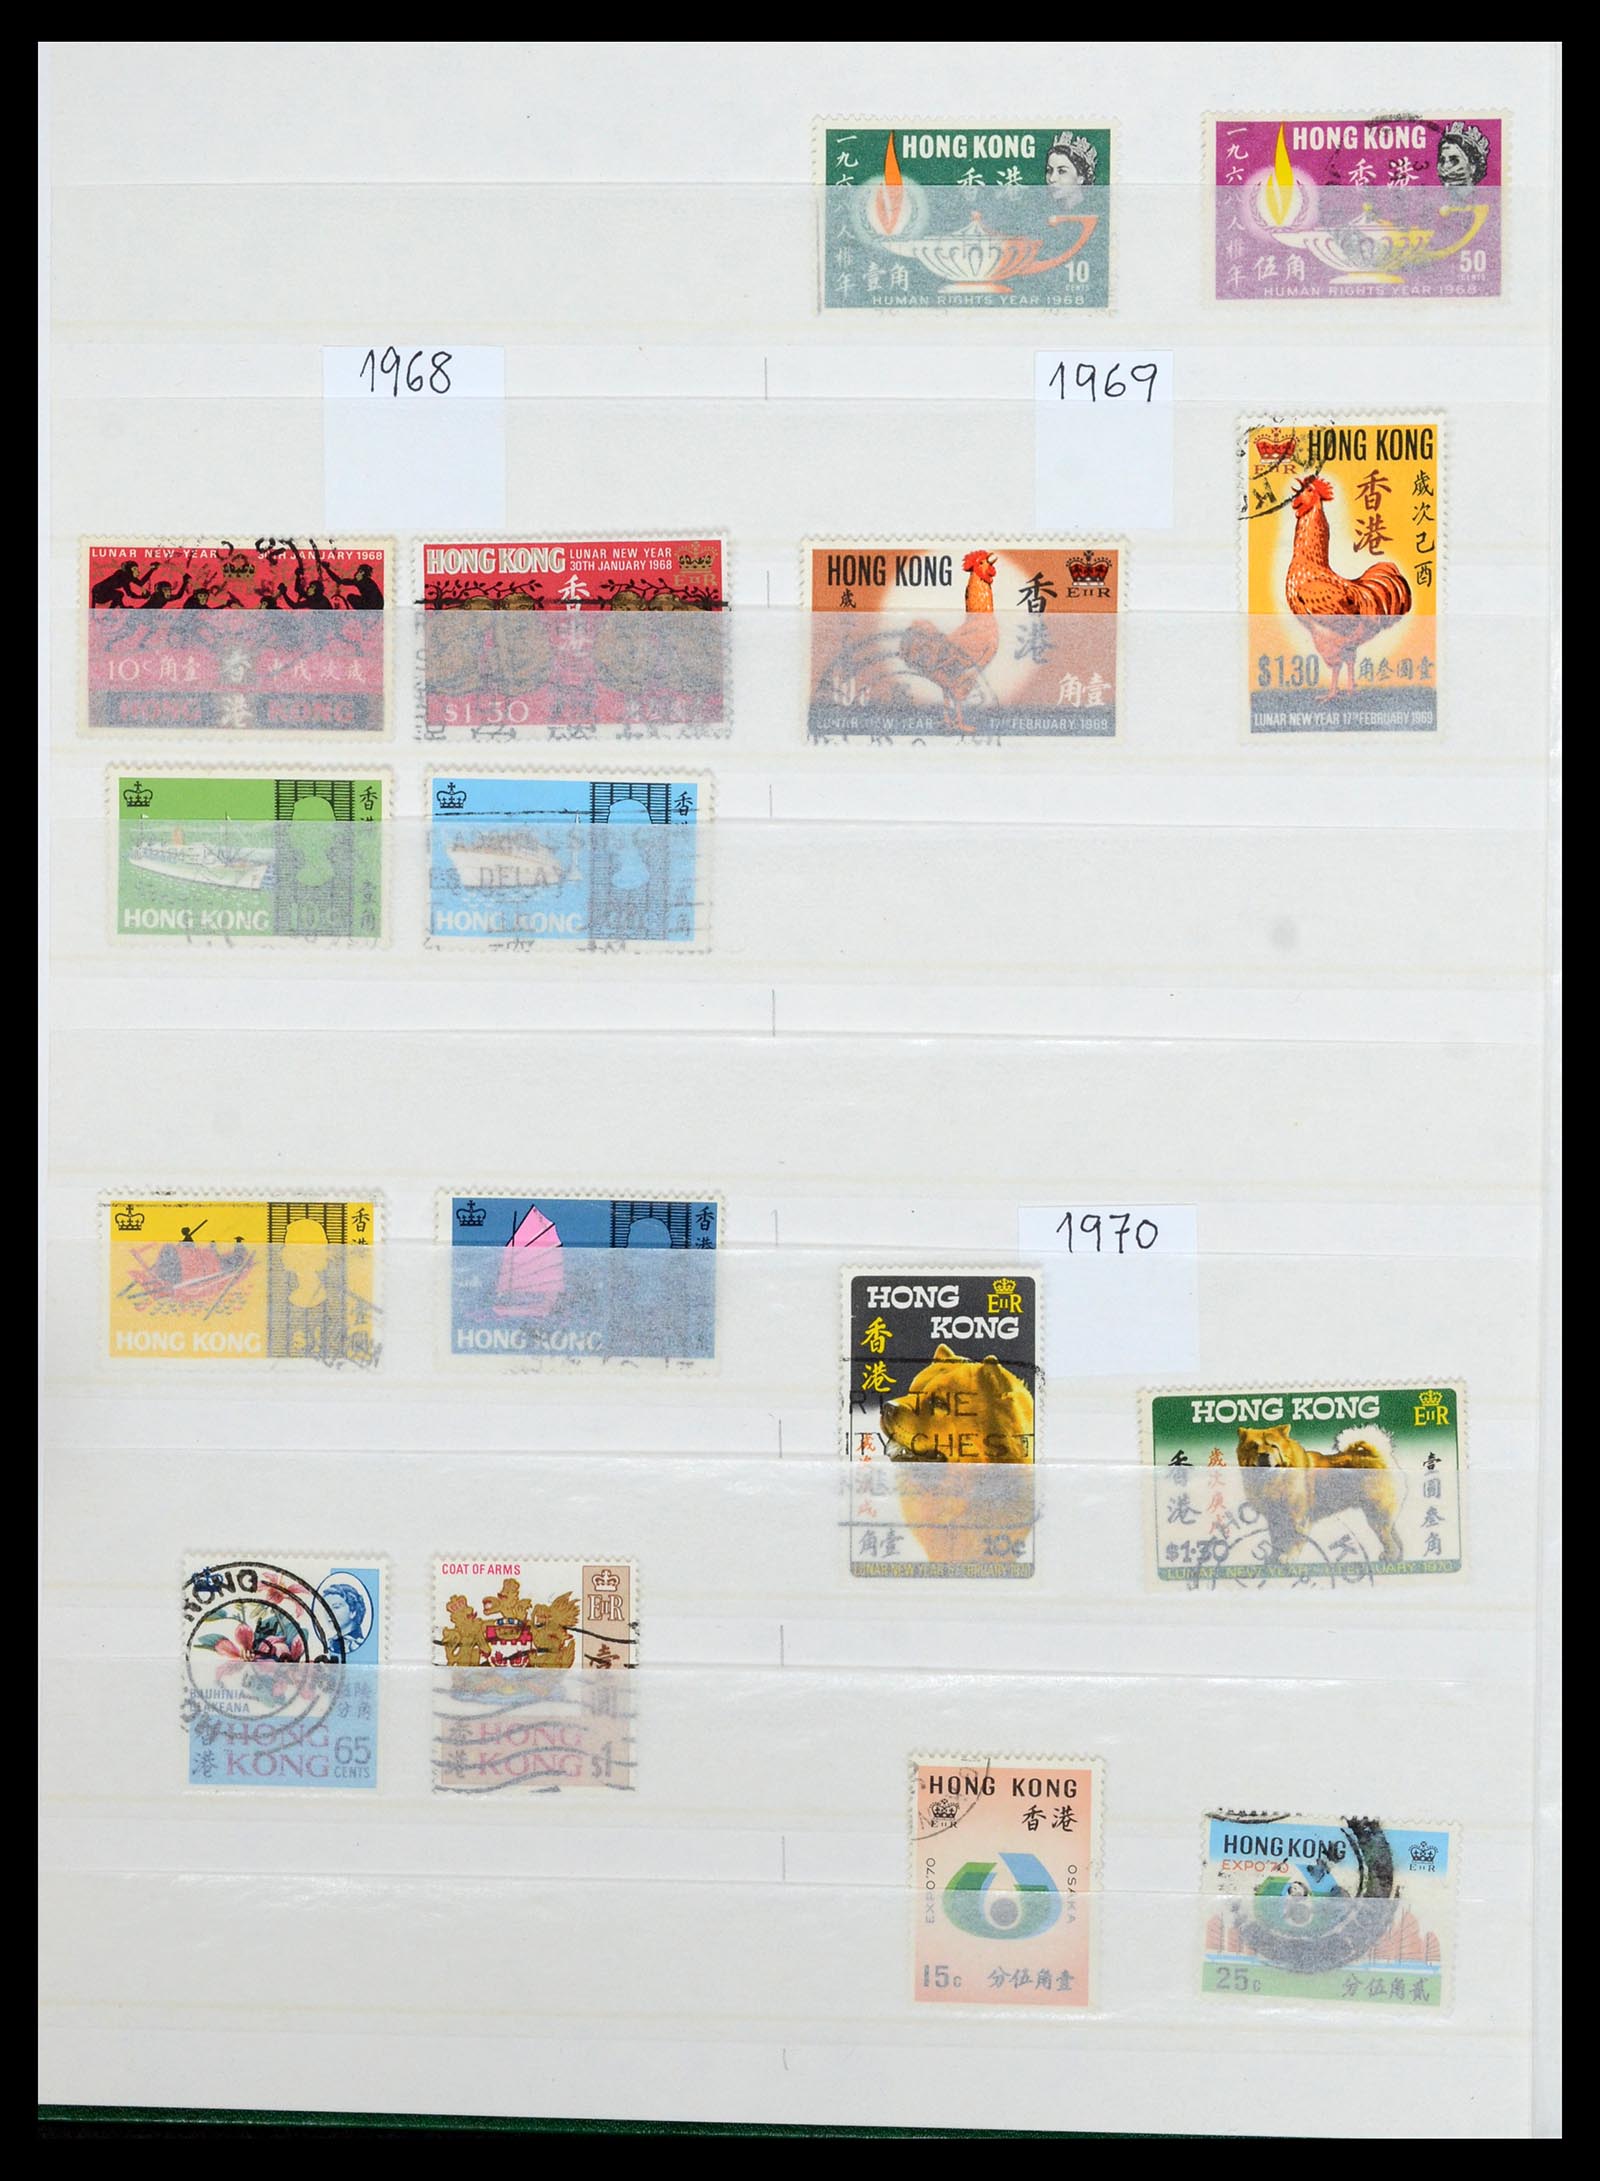 36707 012 - Stamp collection 36707 Hong Kong 1862-1990.